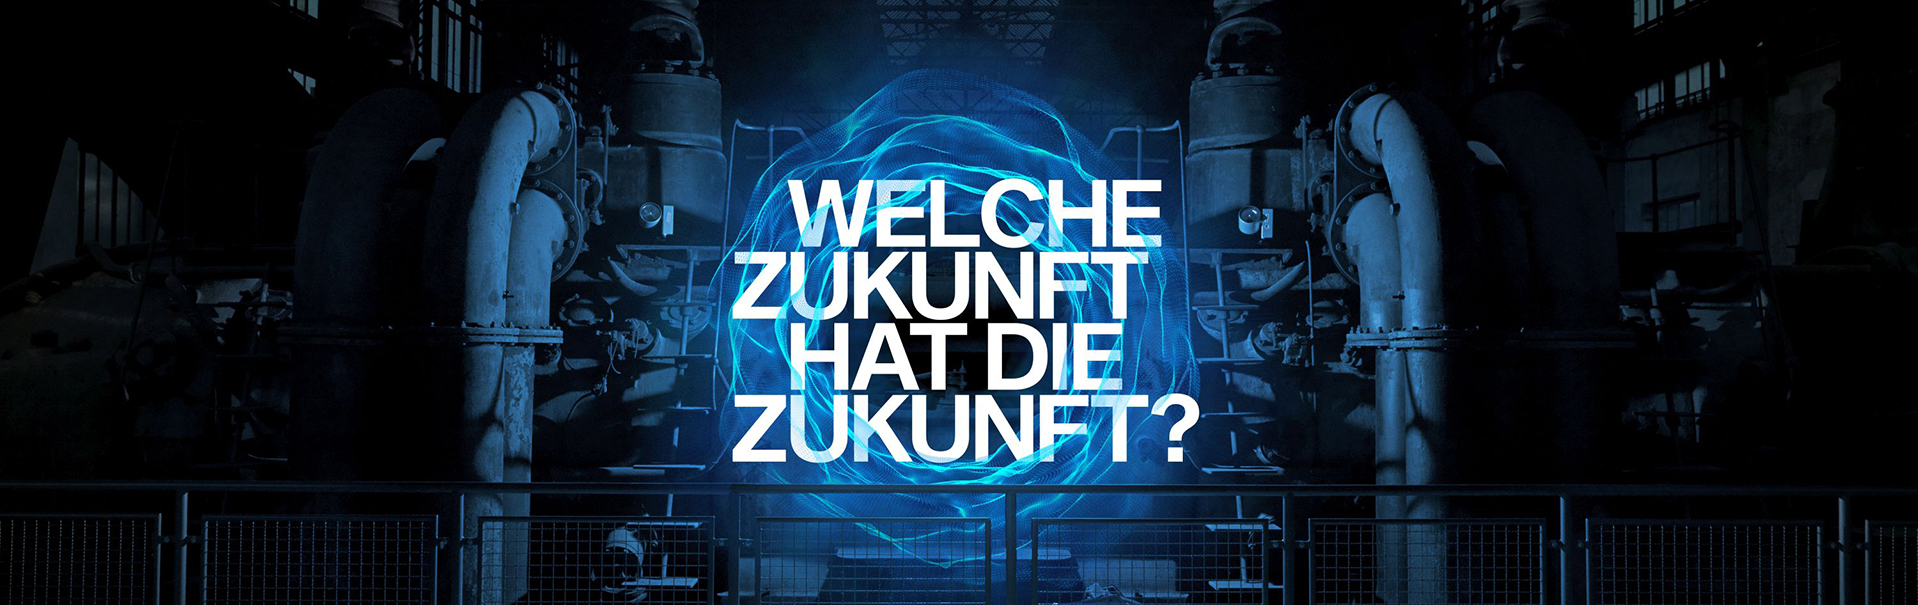 Key Visual des Festivals "Futur 21": die Frage nach der Zukunft, dargestellt in der Henrichshütte Hattingen.